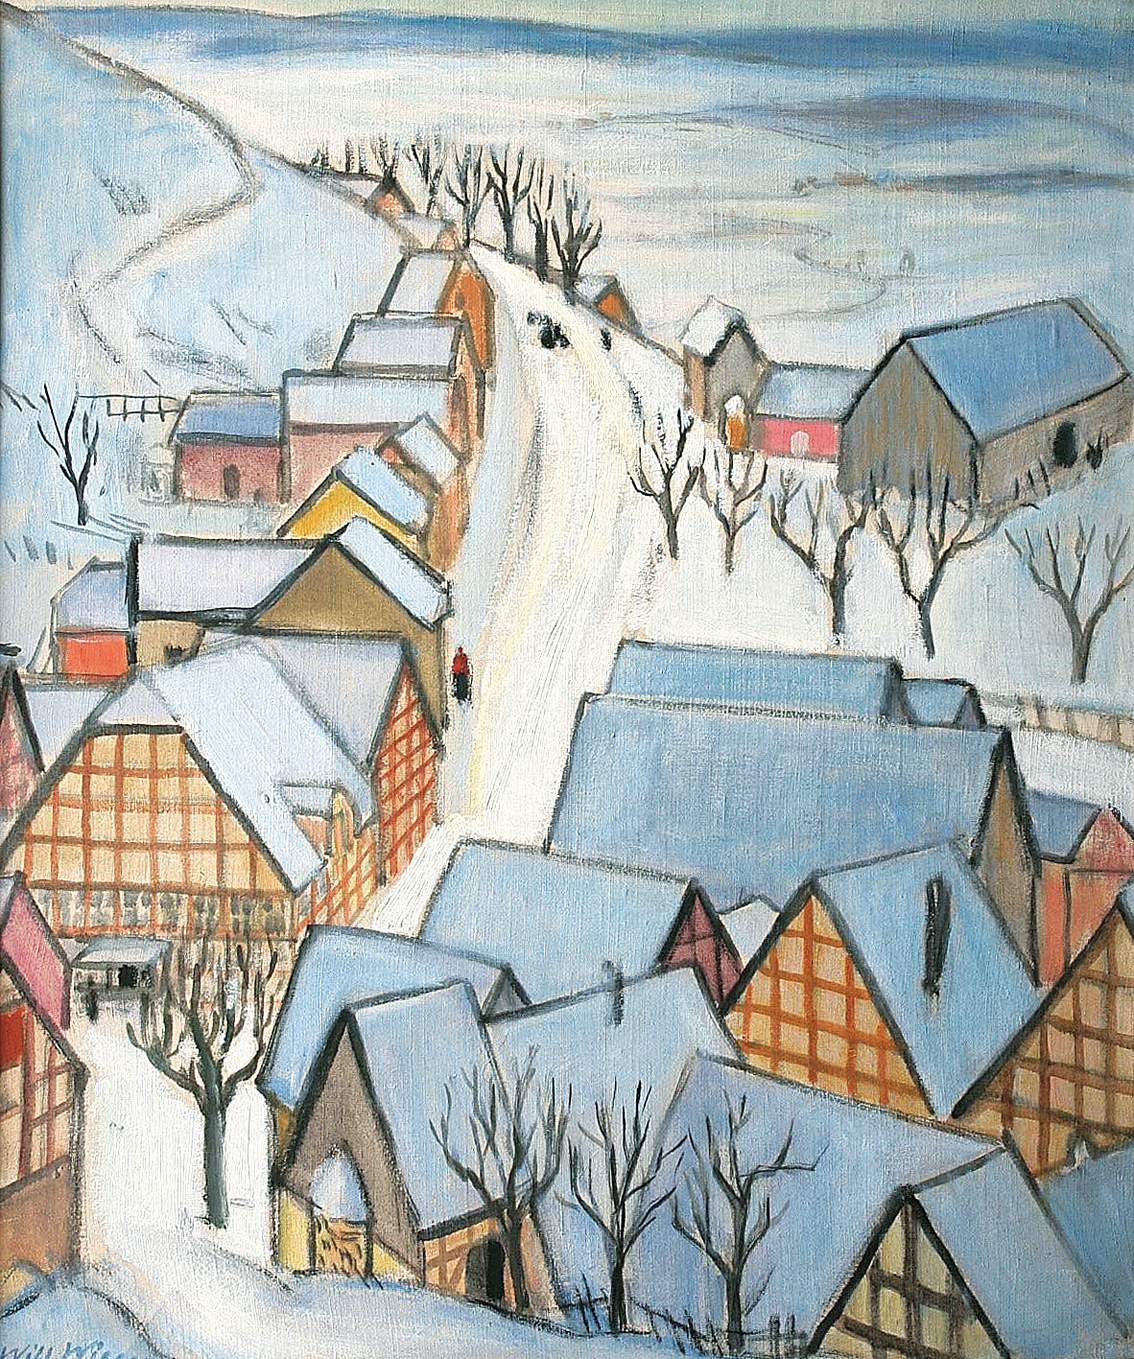 Winterliches Dorf